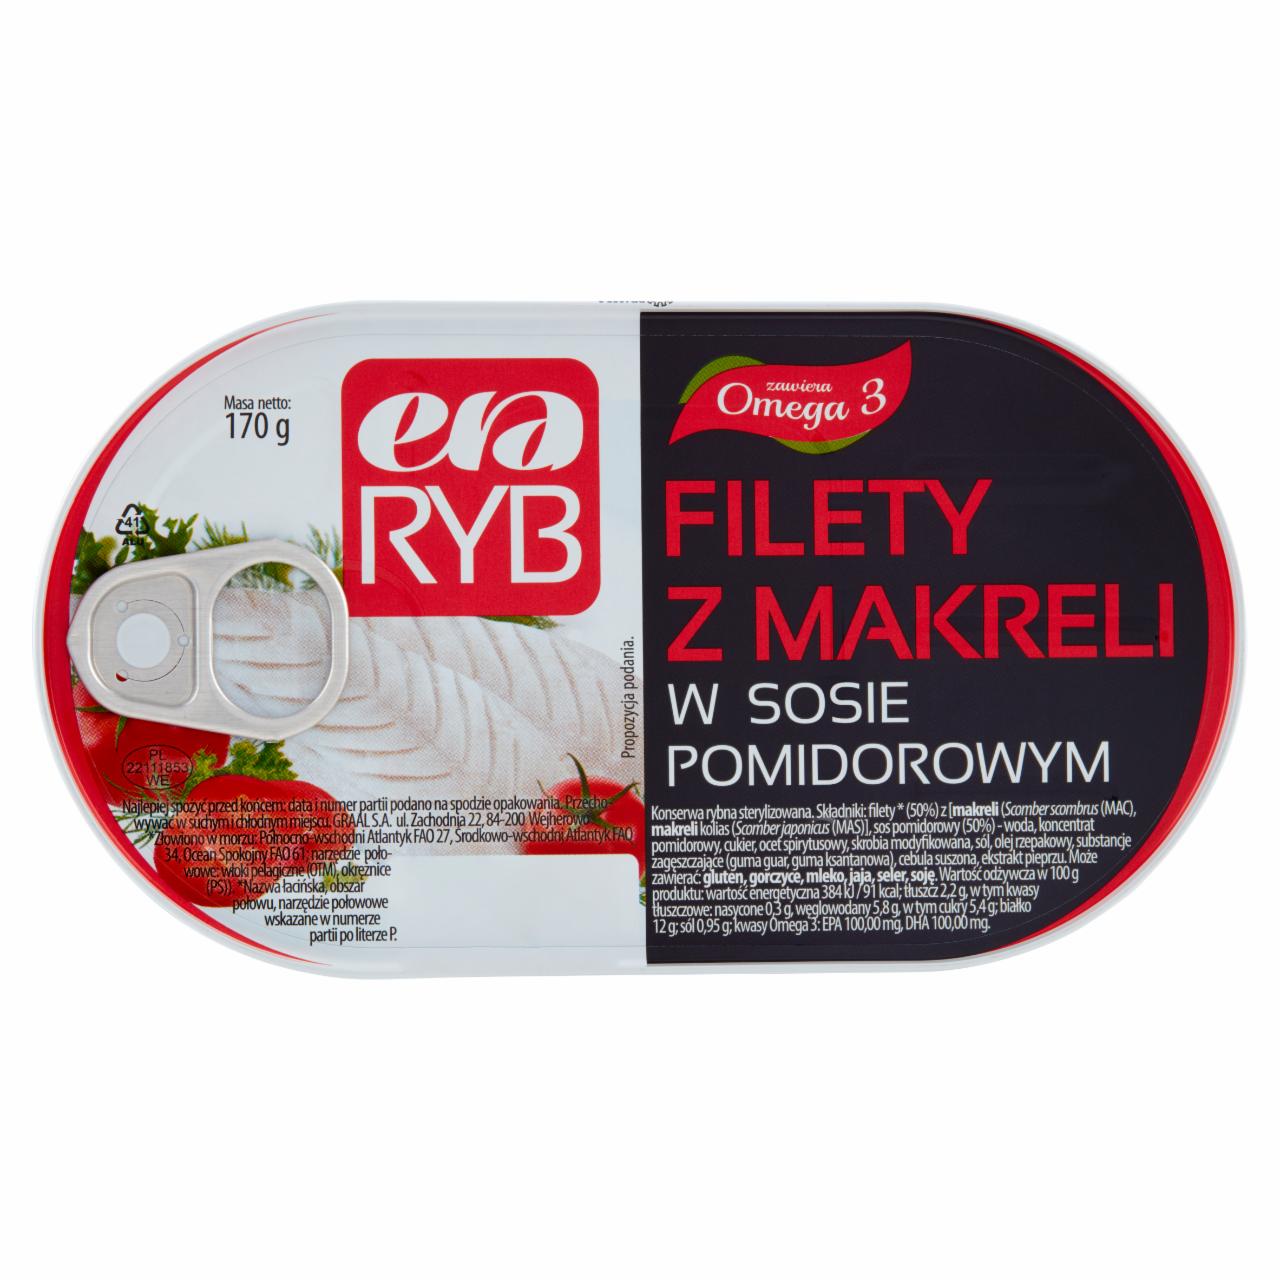 Zdjęcia - Era Ryb Filety z makreli w sosie pomidorowym 170 g